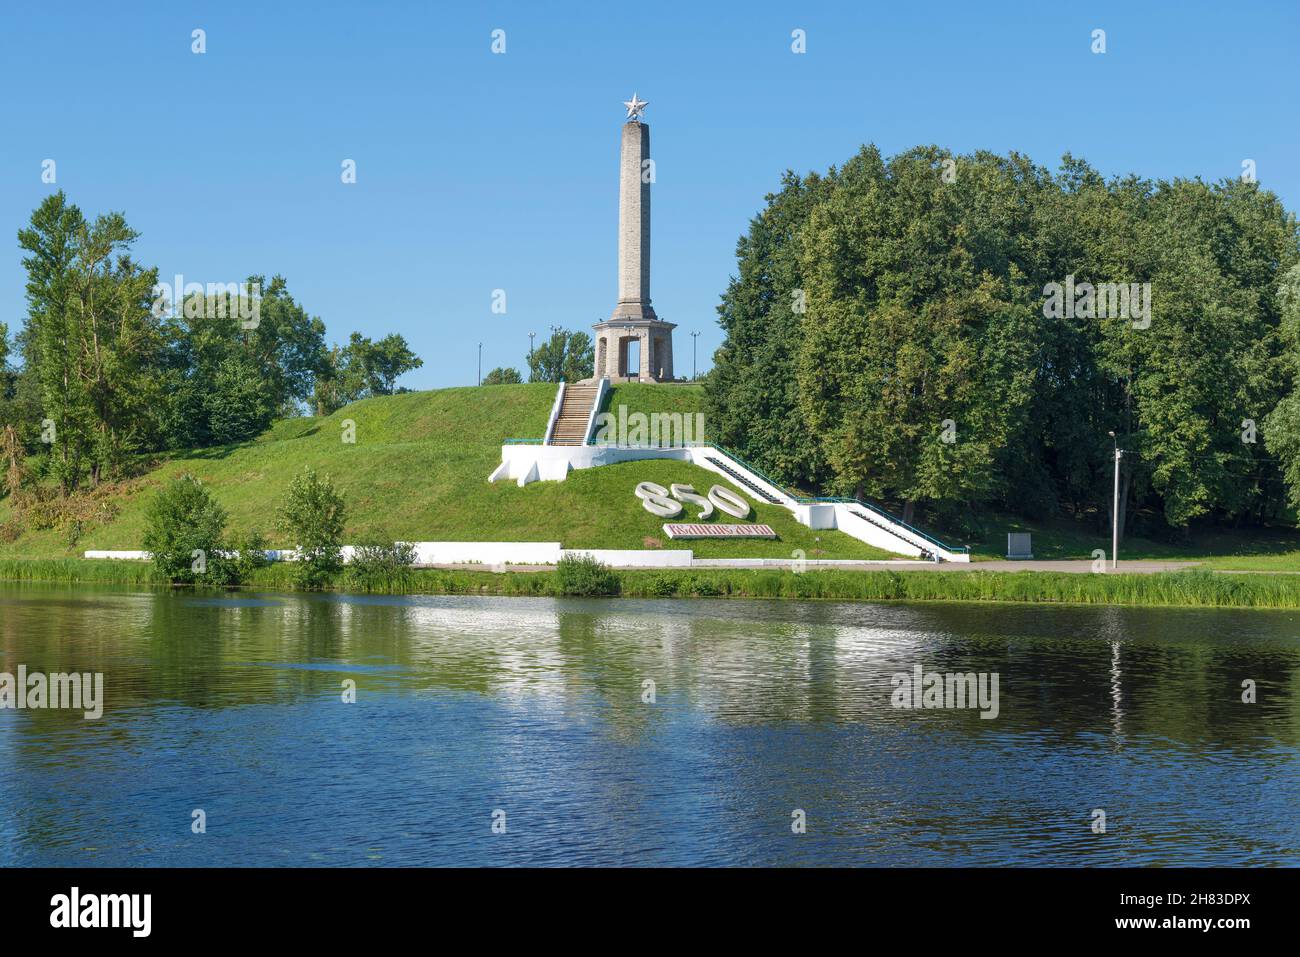 VELIKIE LUKI, RUSSIA - JULY 04, 2021: Obelisk of Glory on a sunny July day Stock Photo